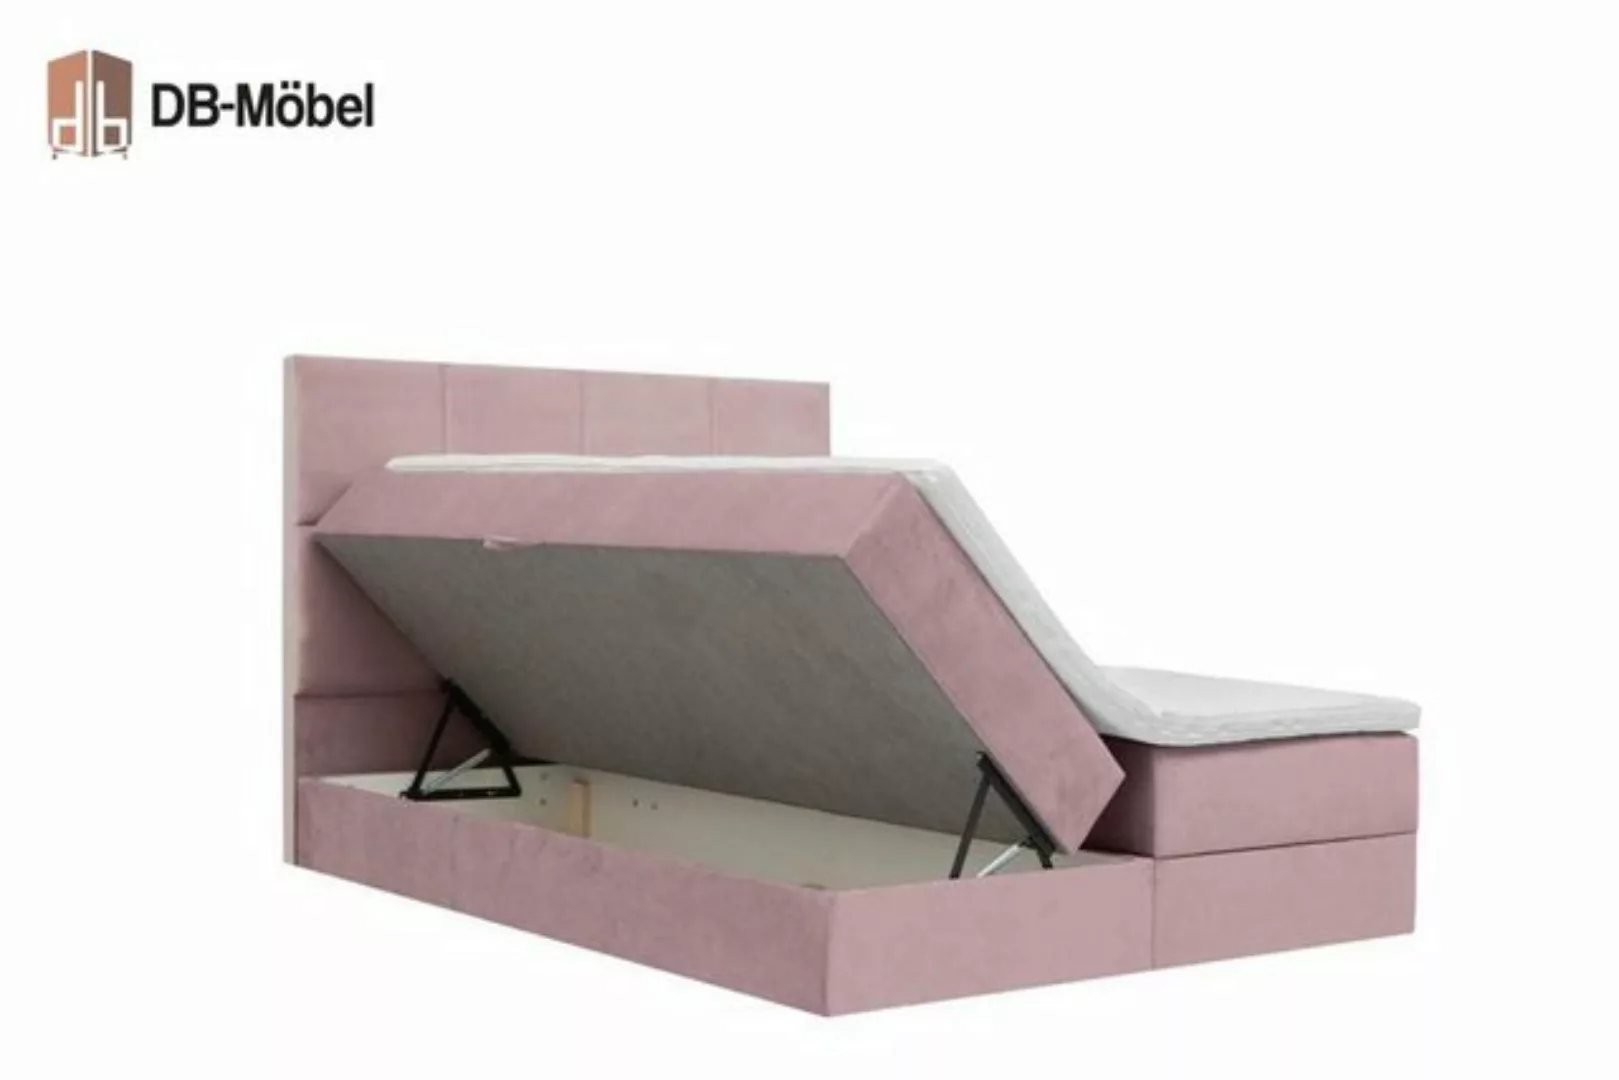 DB-Möbel Boxspringbett Artemia Bettkasten Doppelbett mit Matratzenauflagen günstig online kaufen